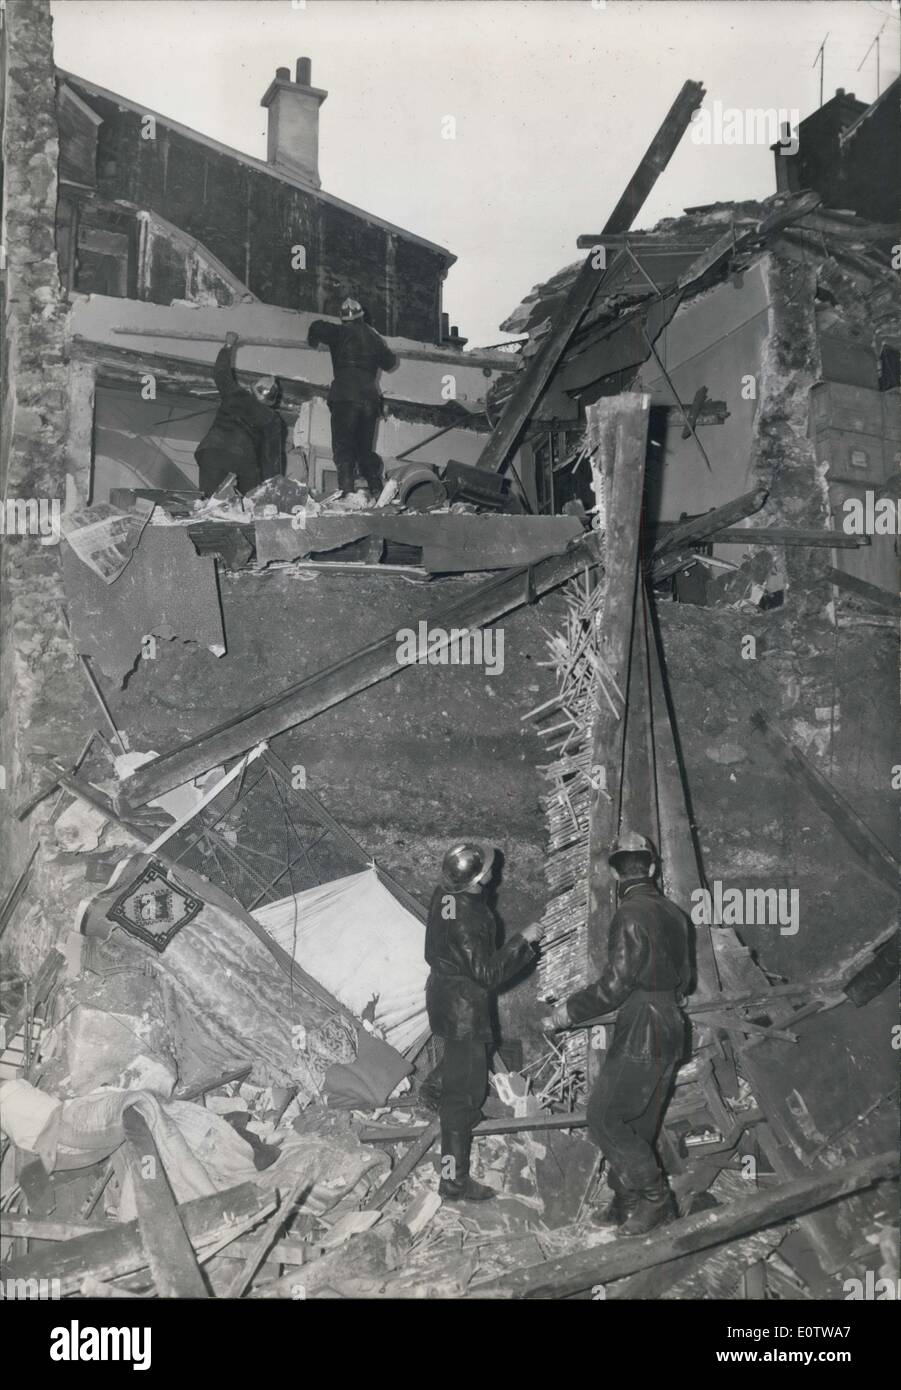 Sept. 30, 1960 - Haus zusammenbricht im Norden von Paris: fünf Mieter schwer verletzt. Ein altes Gebäude in der Rue Marcadet, im Norden von Paris, brach gestern Nachmittag. Fünf Bewohner wurden schwer verletzt. Te Haus hat heute evakuiert worden. Das Foto zeigt Feuerwehrleute löschen die Trümmer. Stockfoto